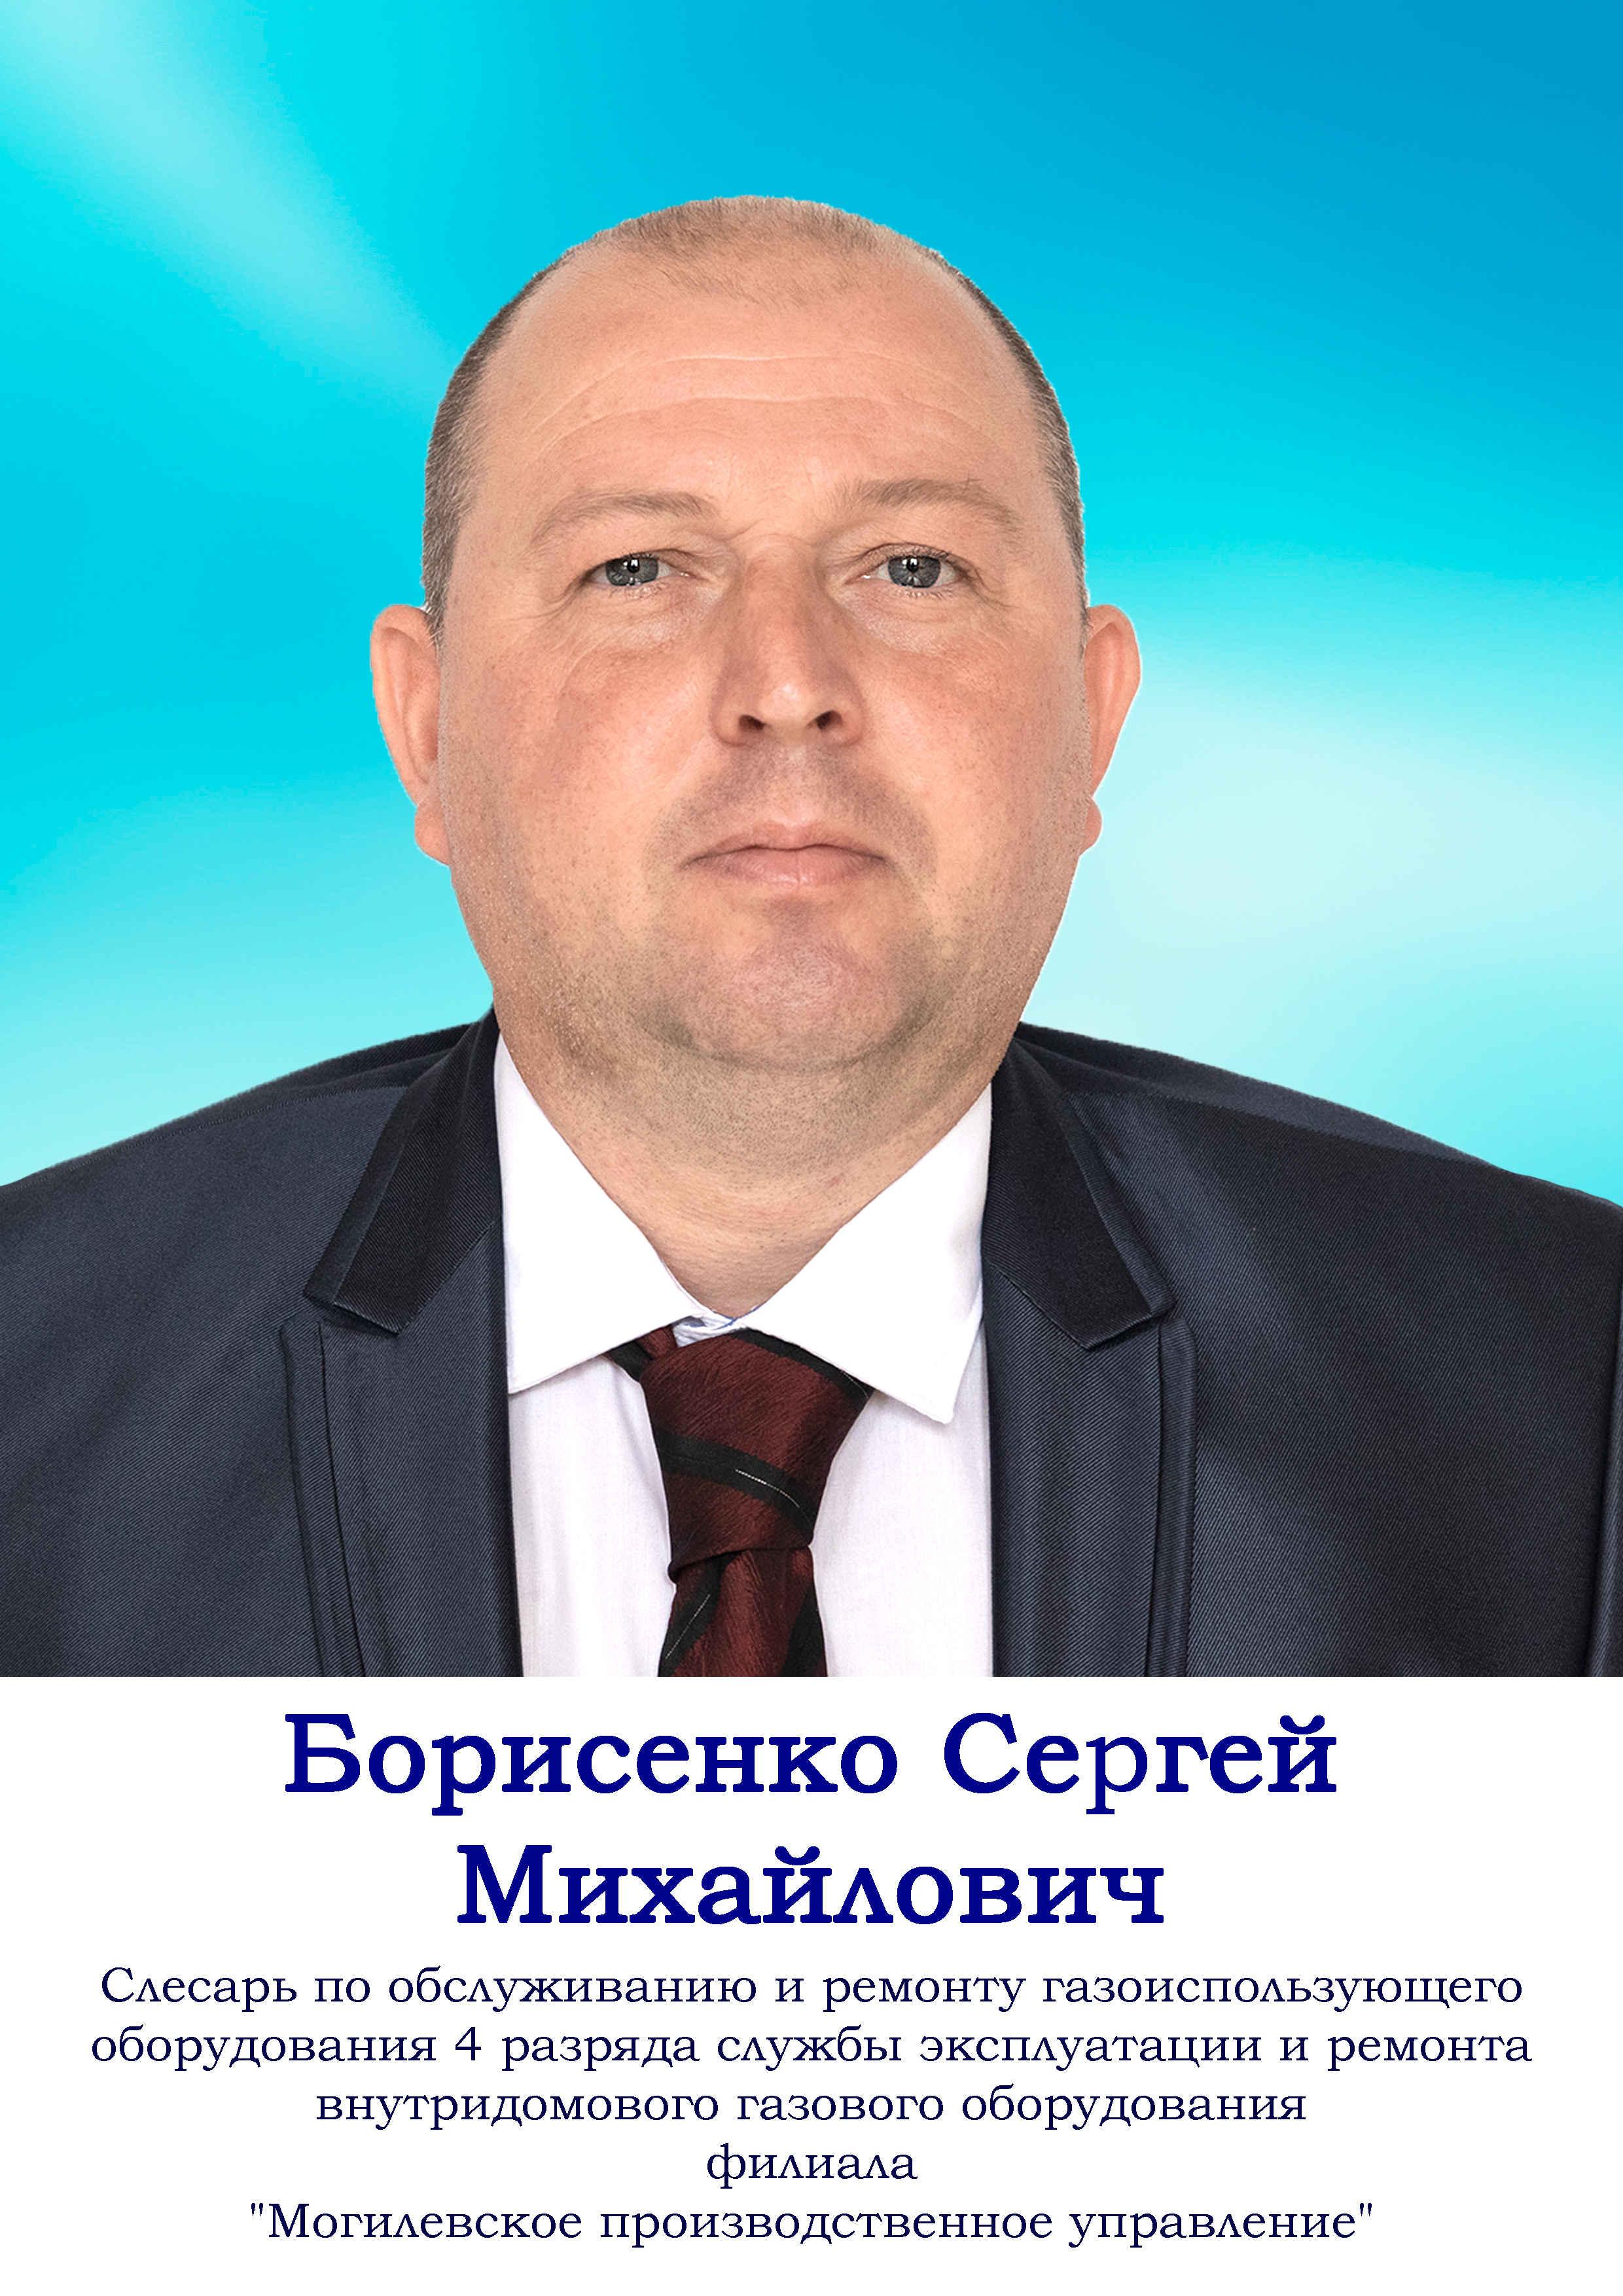 Борисенко Сергей Михайлович